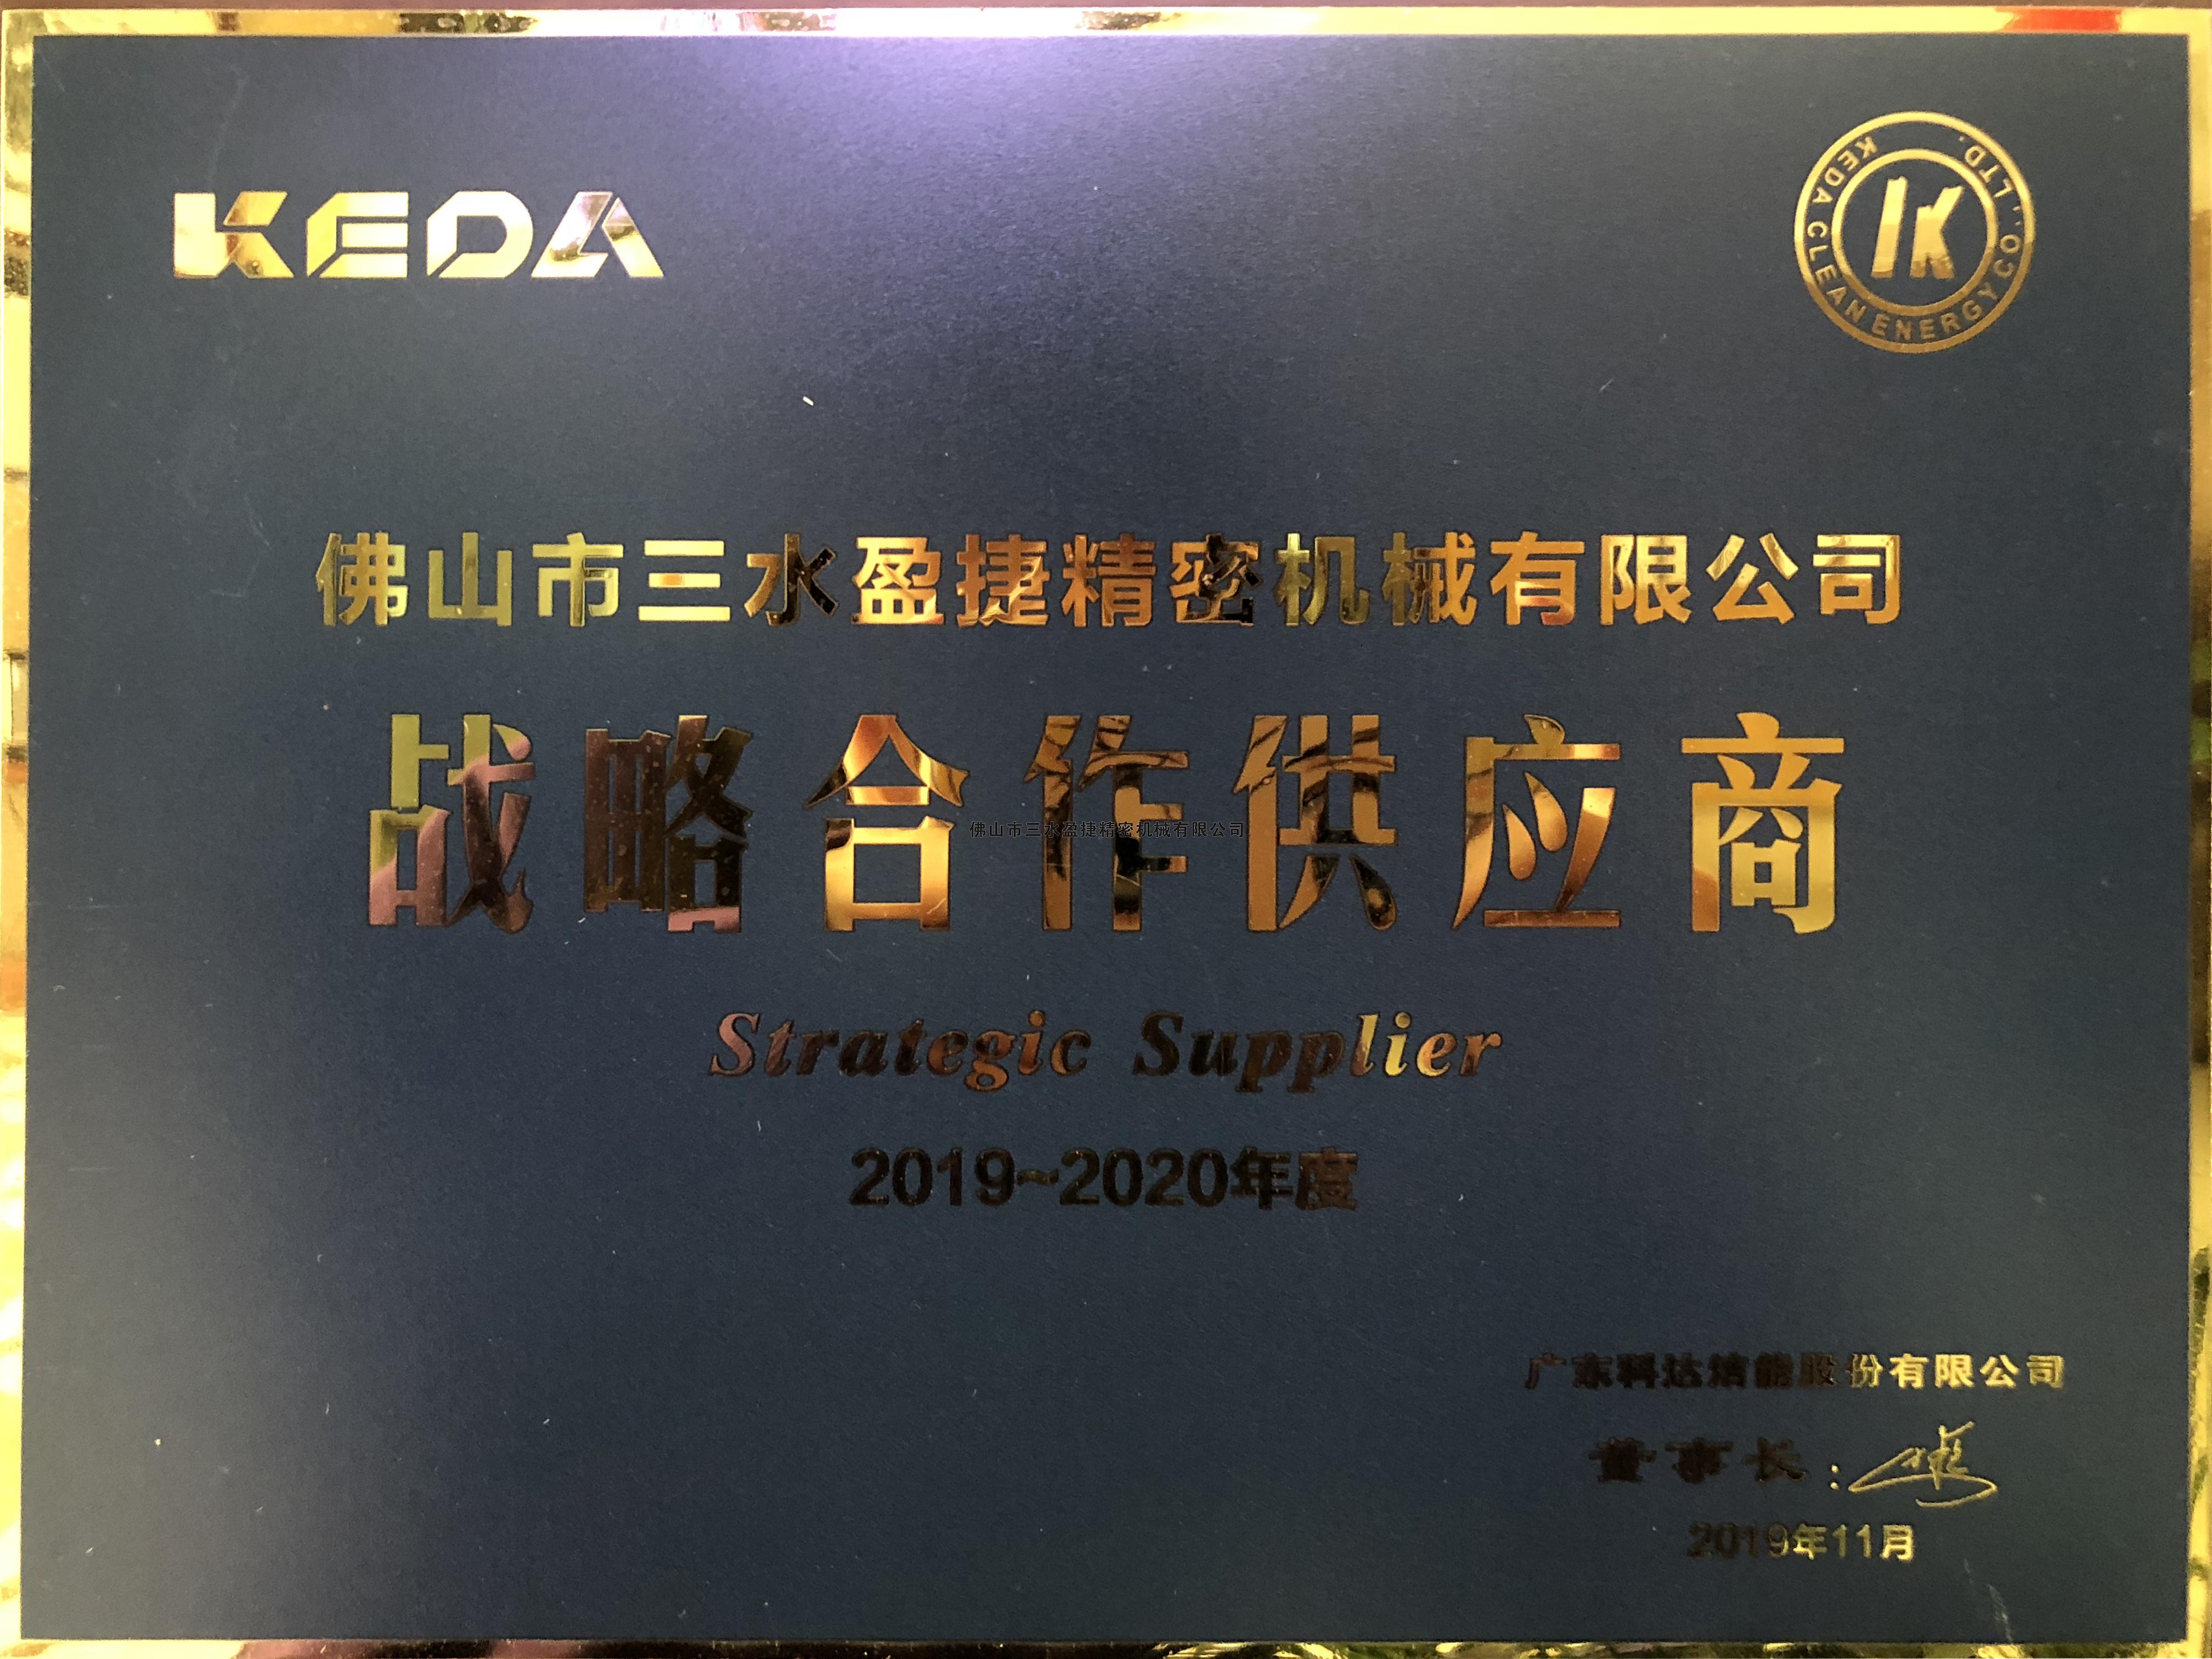 科达公司颁发2019年度战略合作供应商